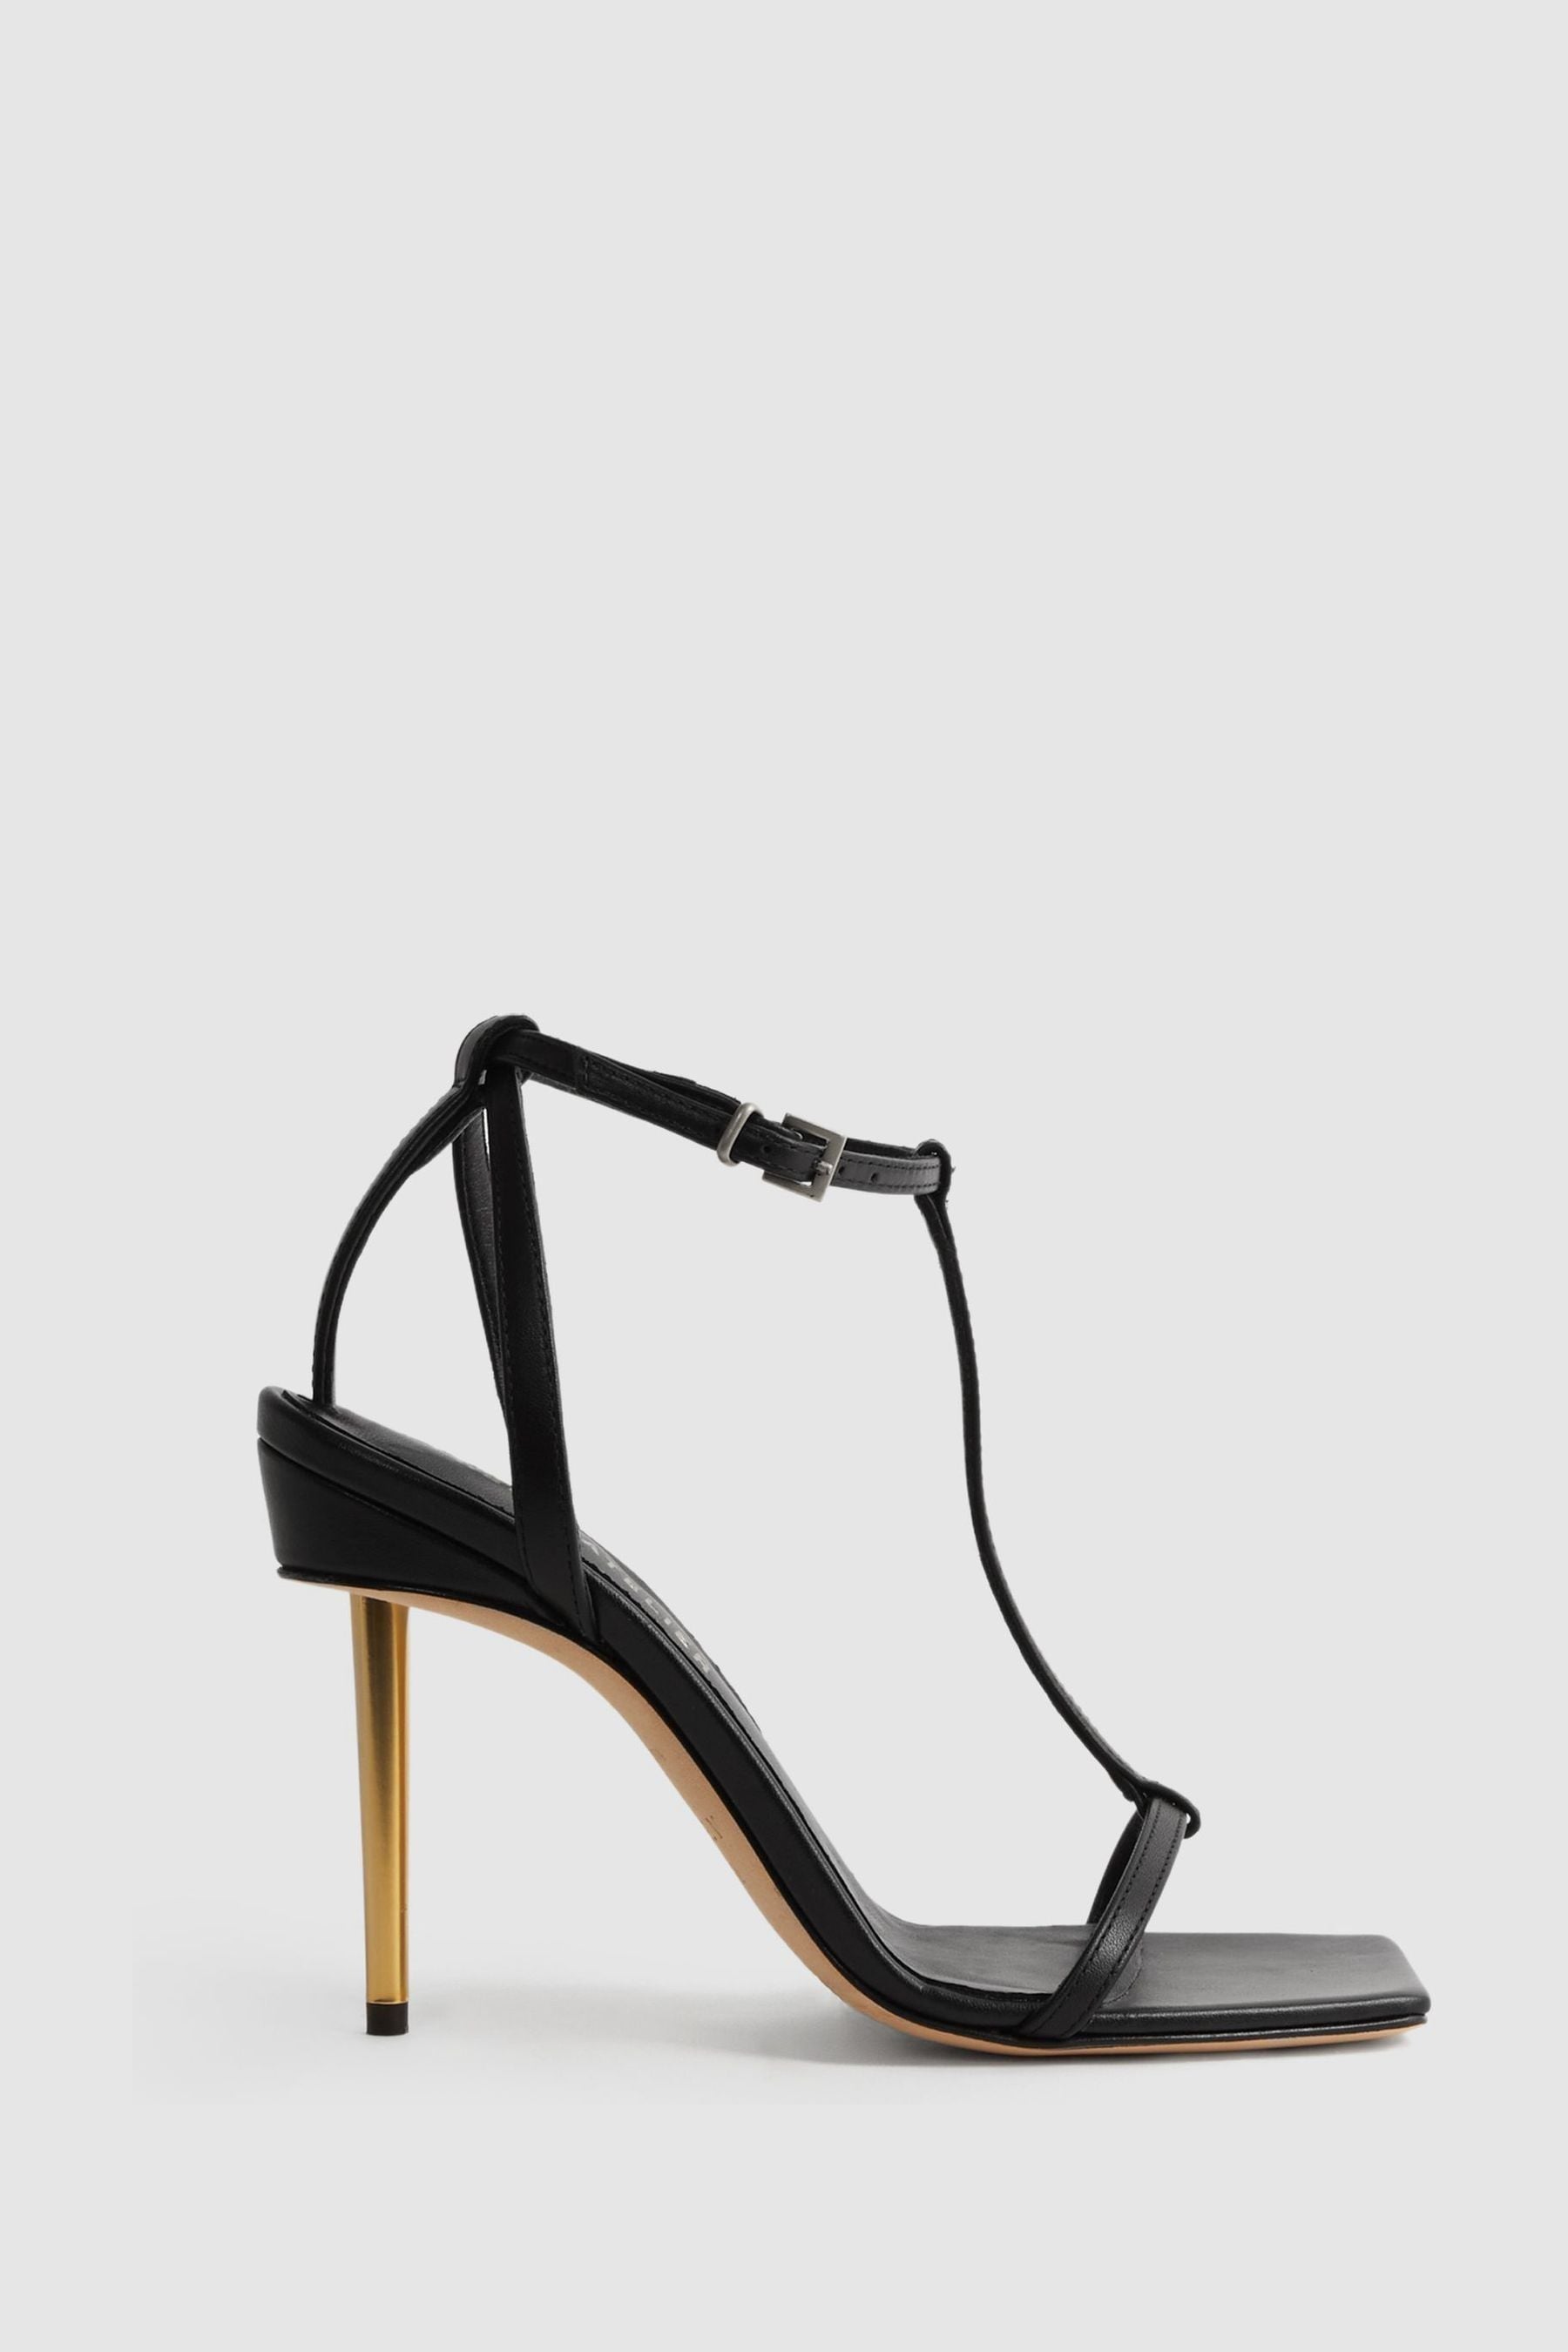 Reiss Sophia - Black Atelier Italian Leather Strappy Heels, Uk 7 Eu 40